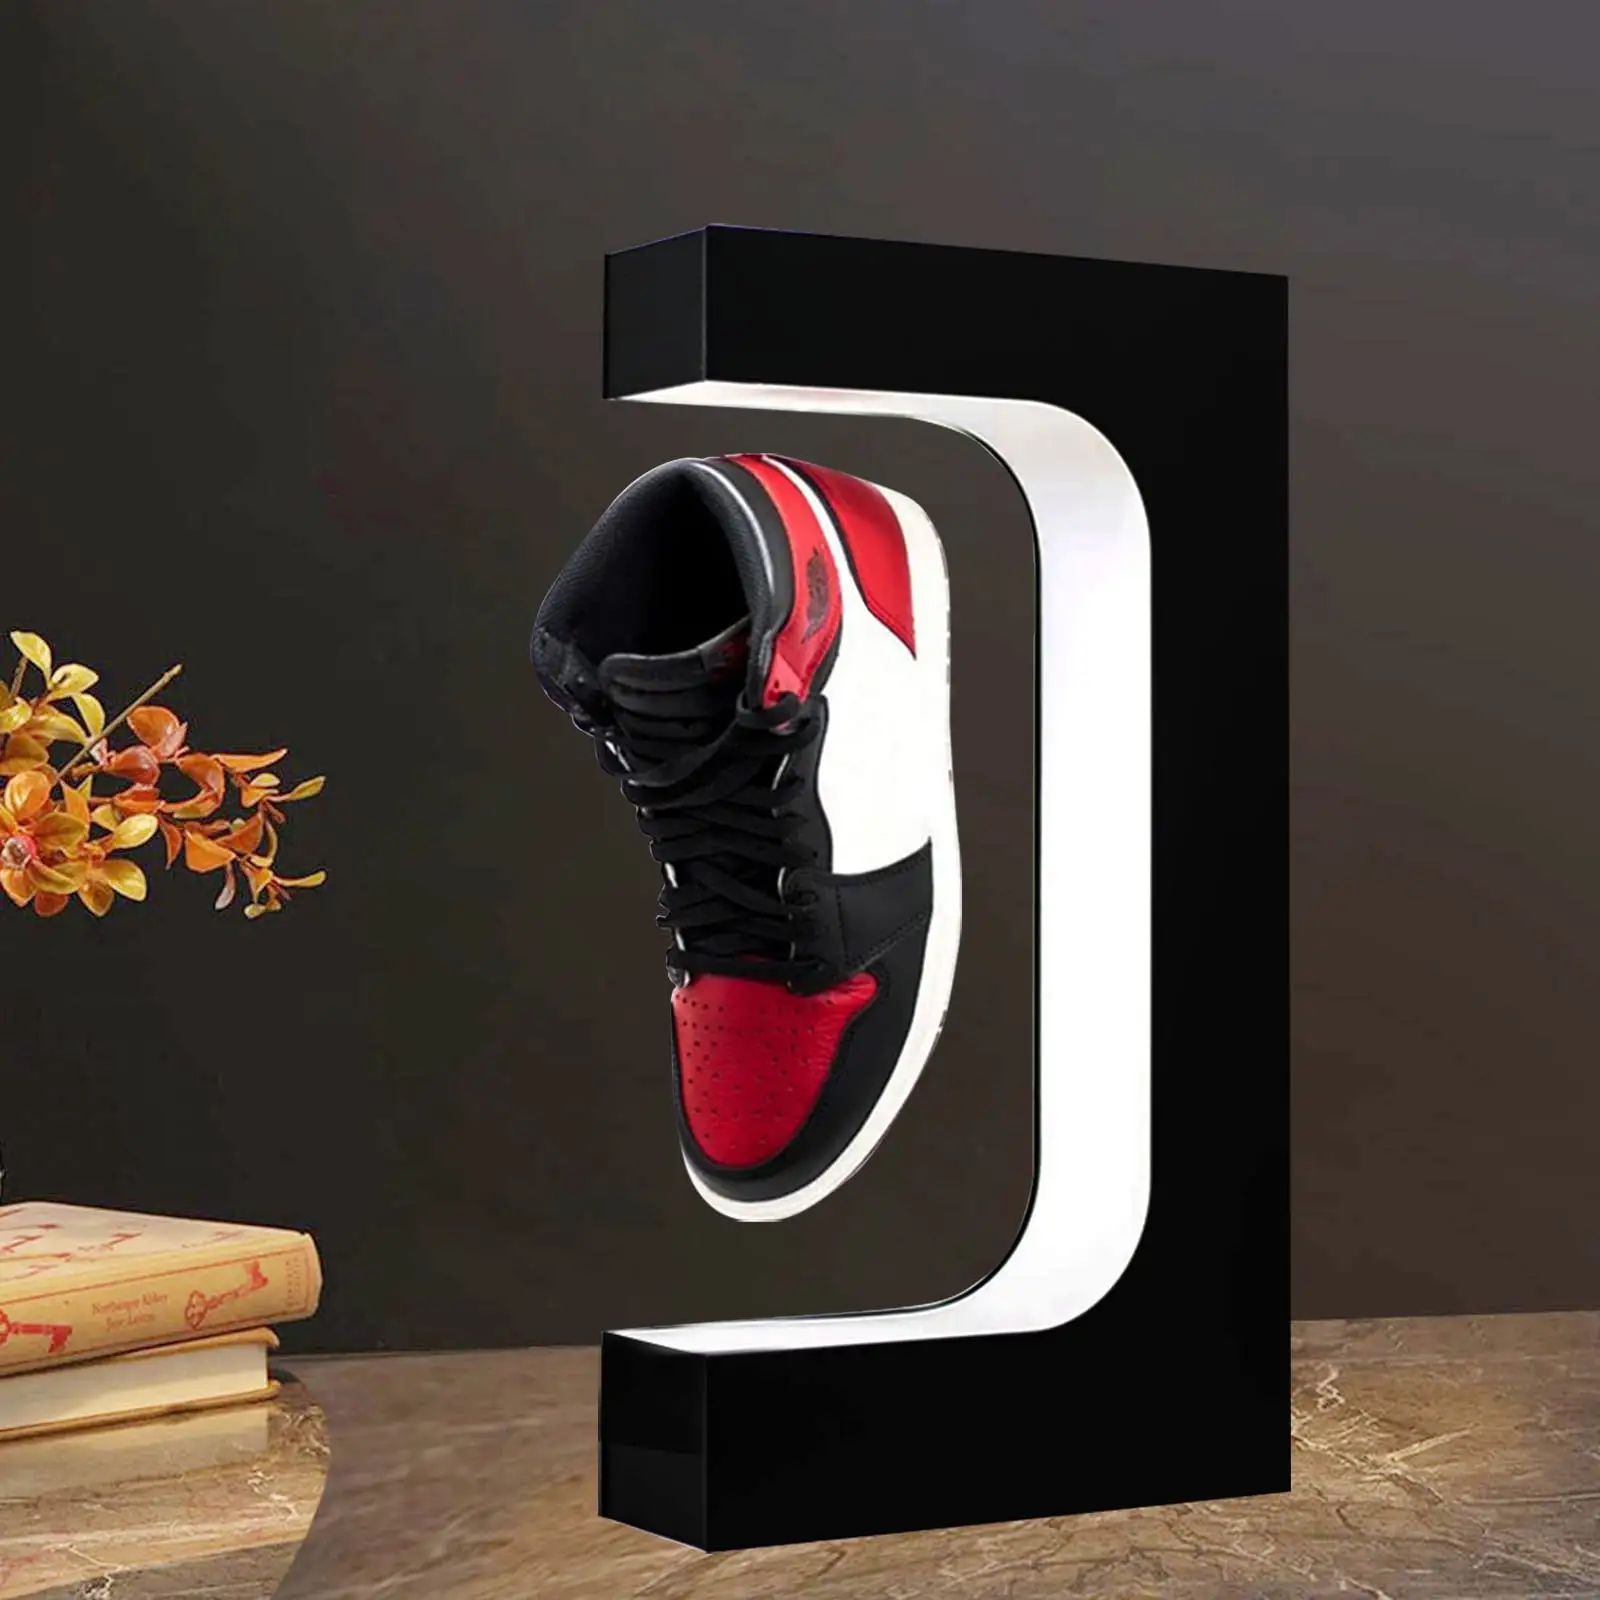 Aangepaste Acryl Zwevende Schoen Display Drijvende Sneaker Stand Met Afstandsbediening Op Led Licht Voor Schoenen Verzamelaars Winkel